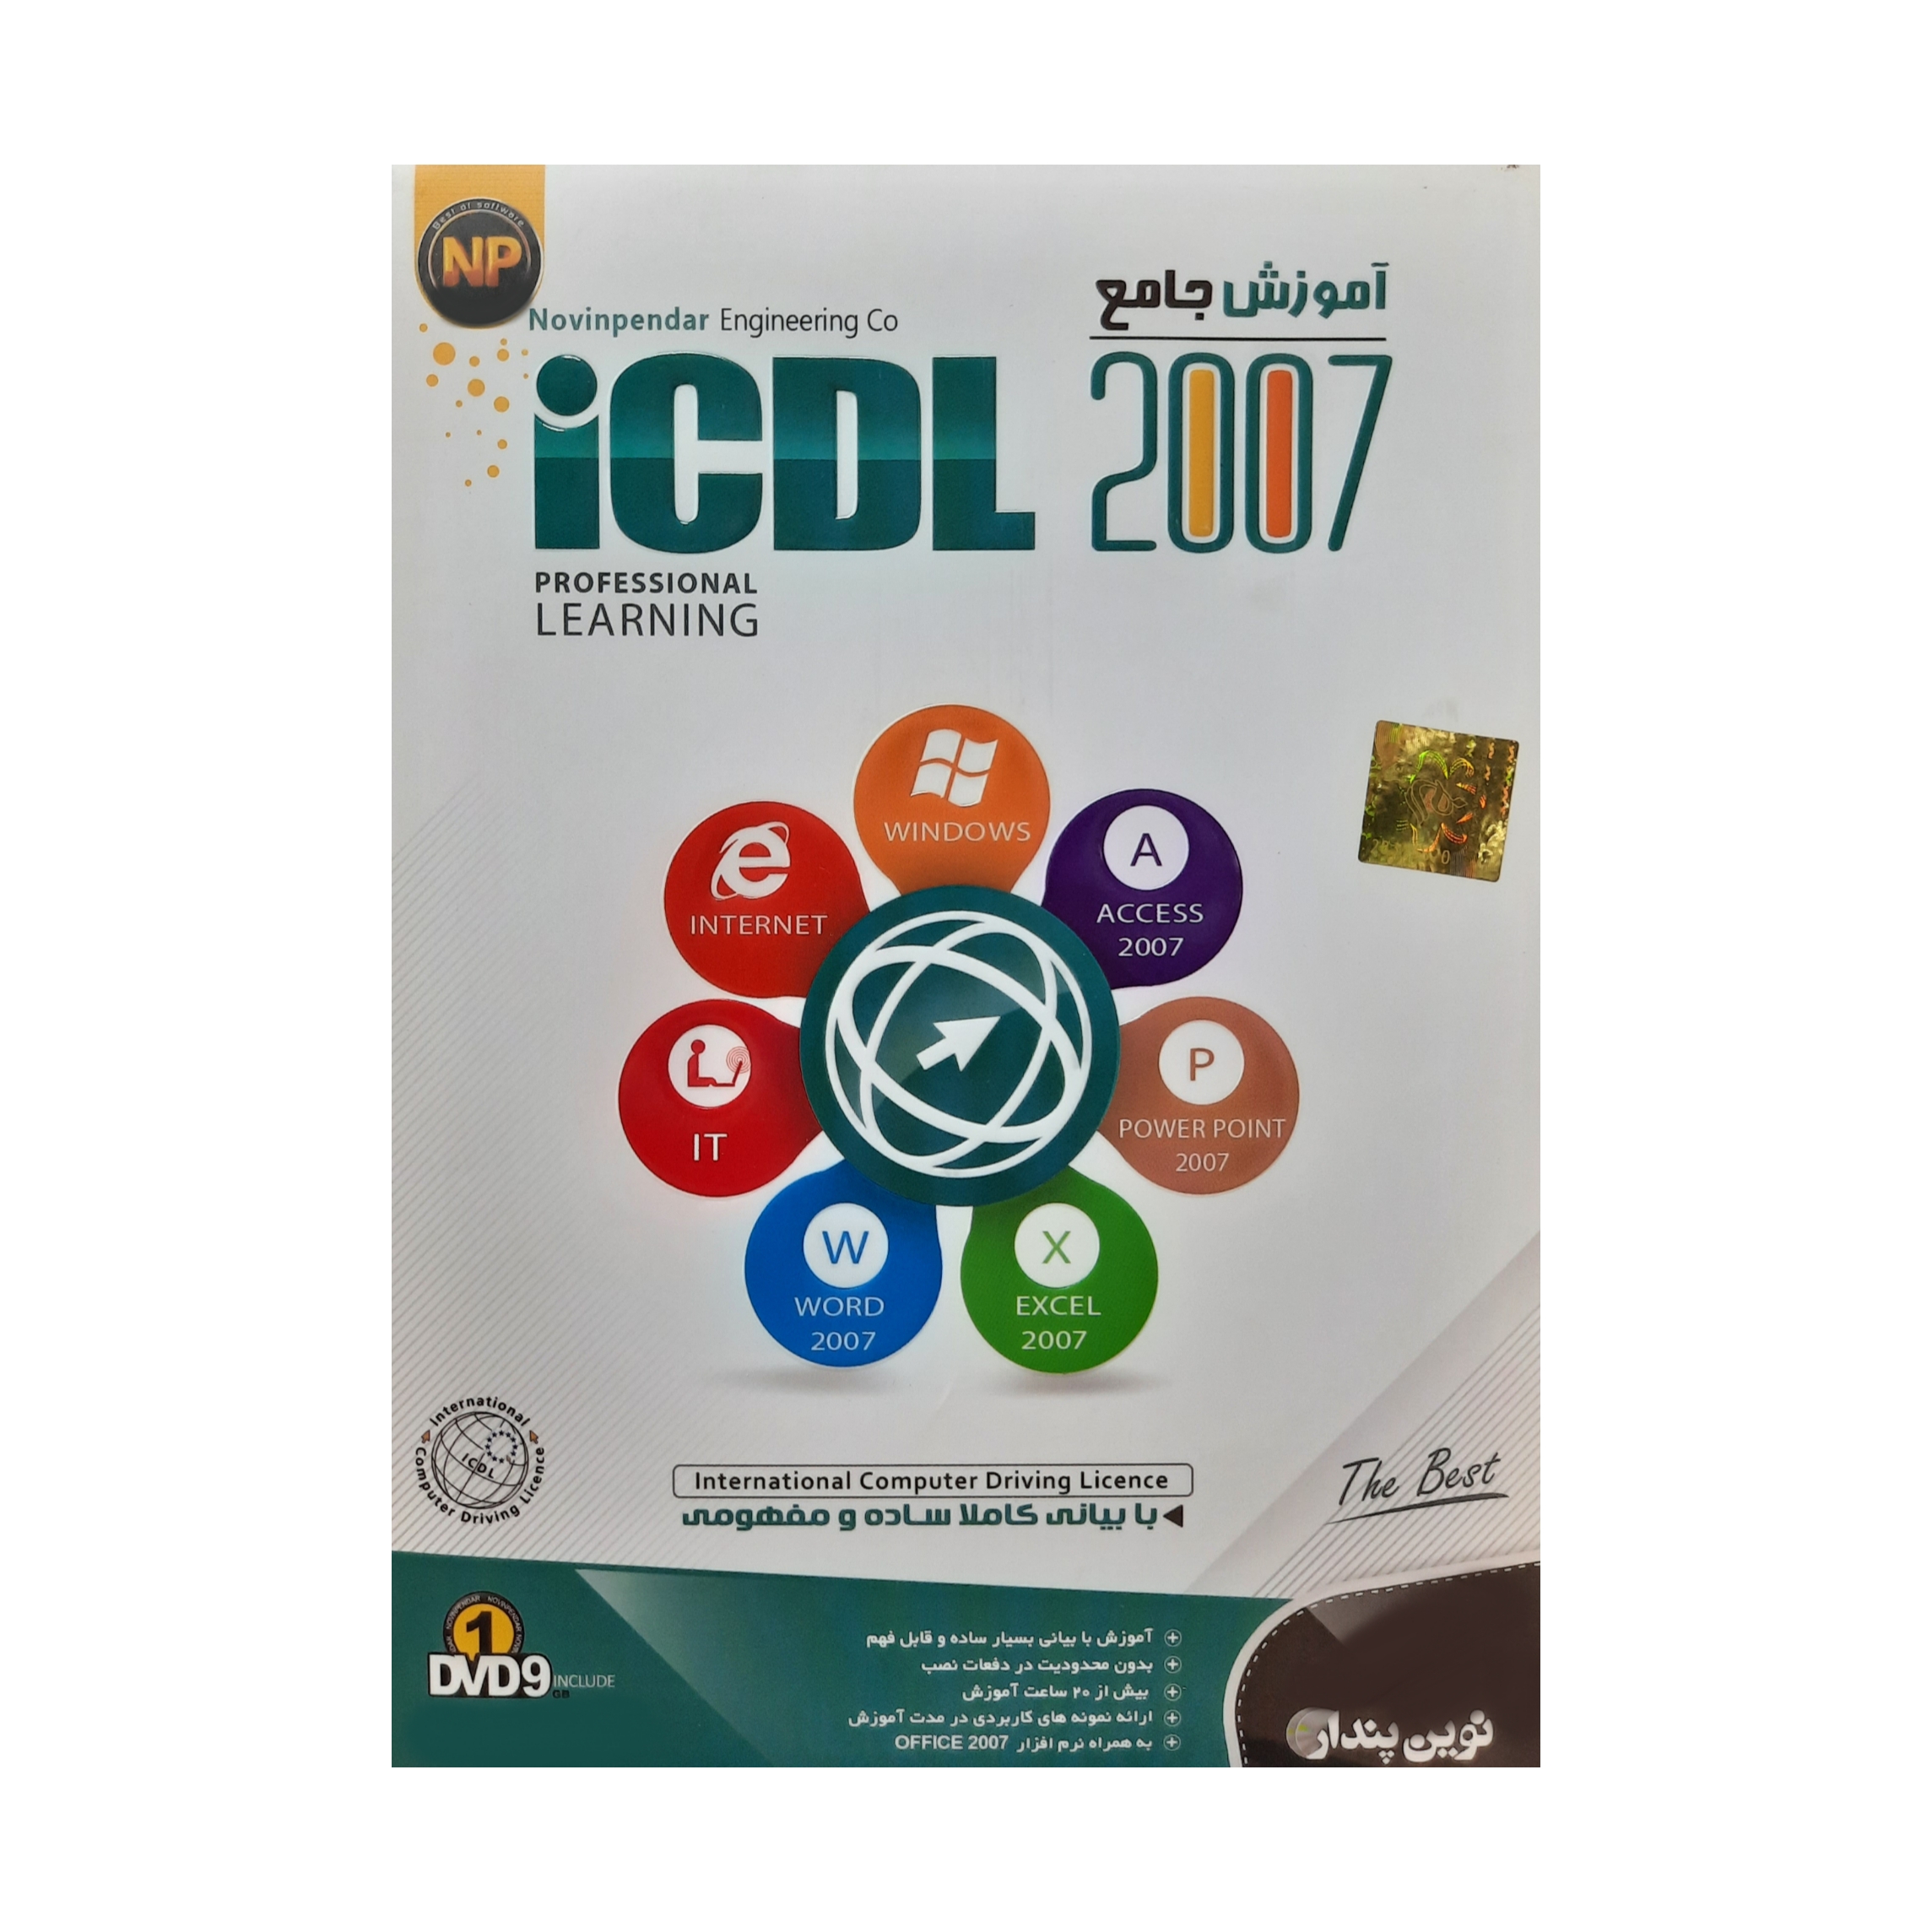 آموزش جامع آفیس ICDL 2007 نشر نوین پندار